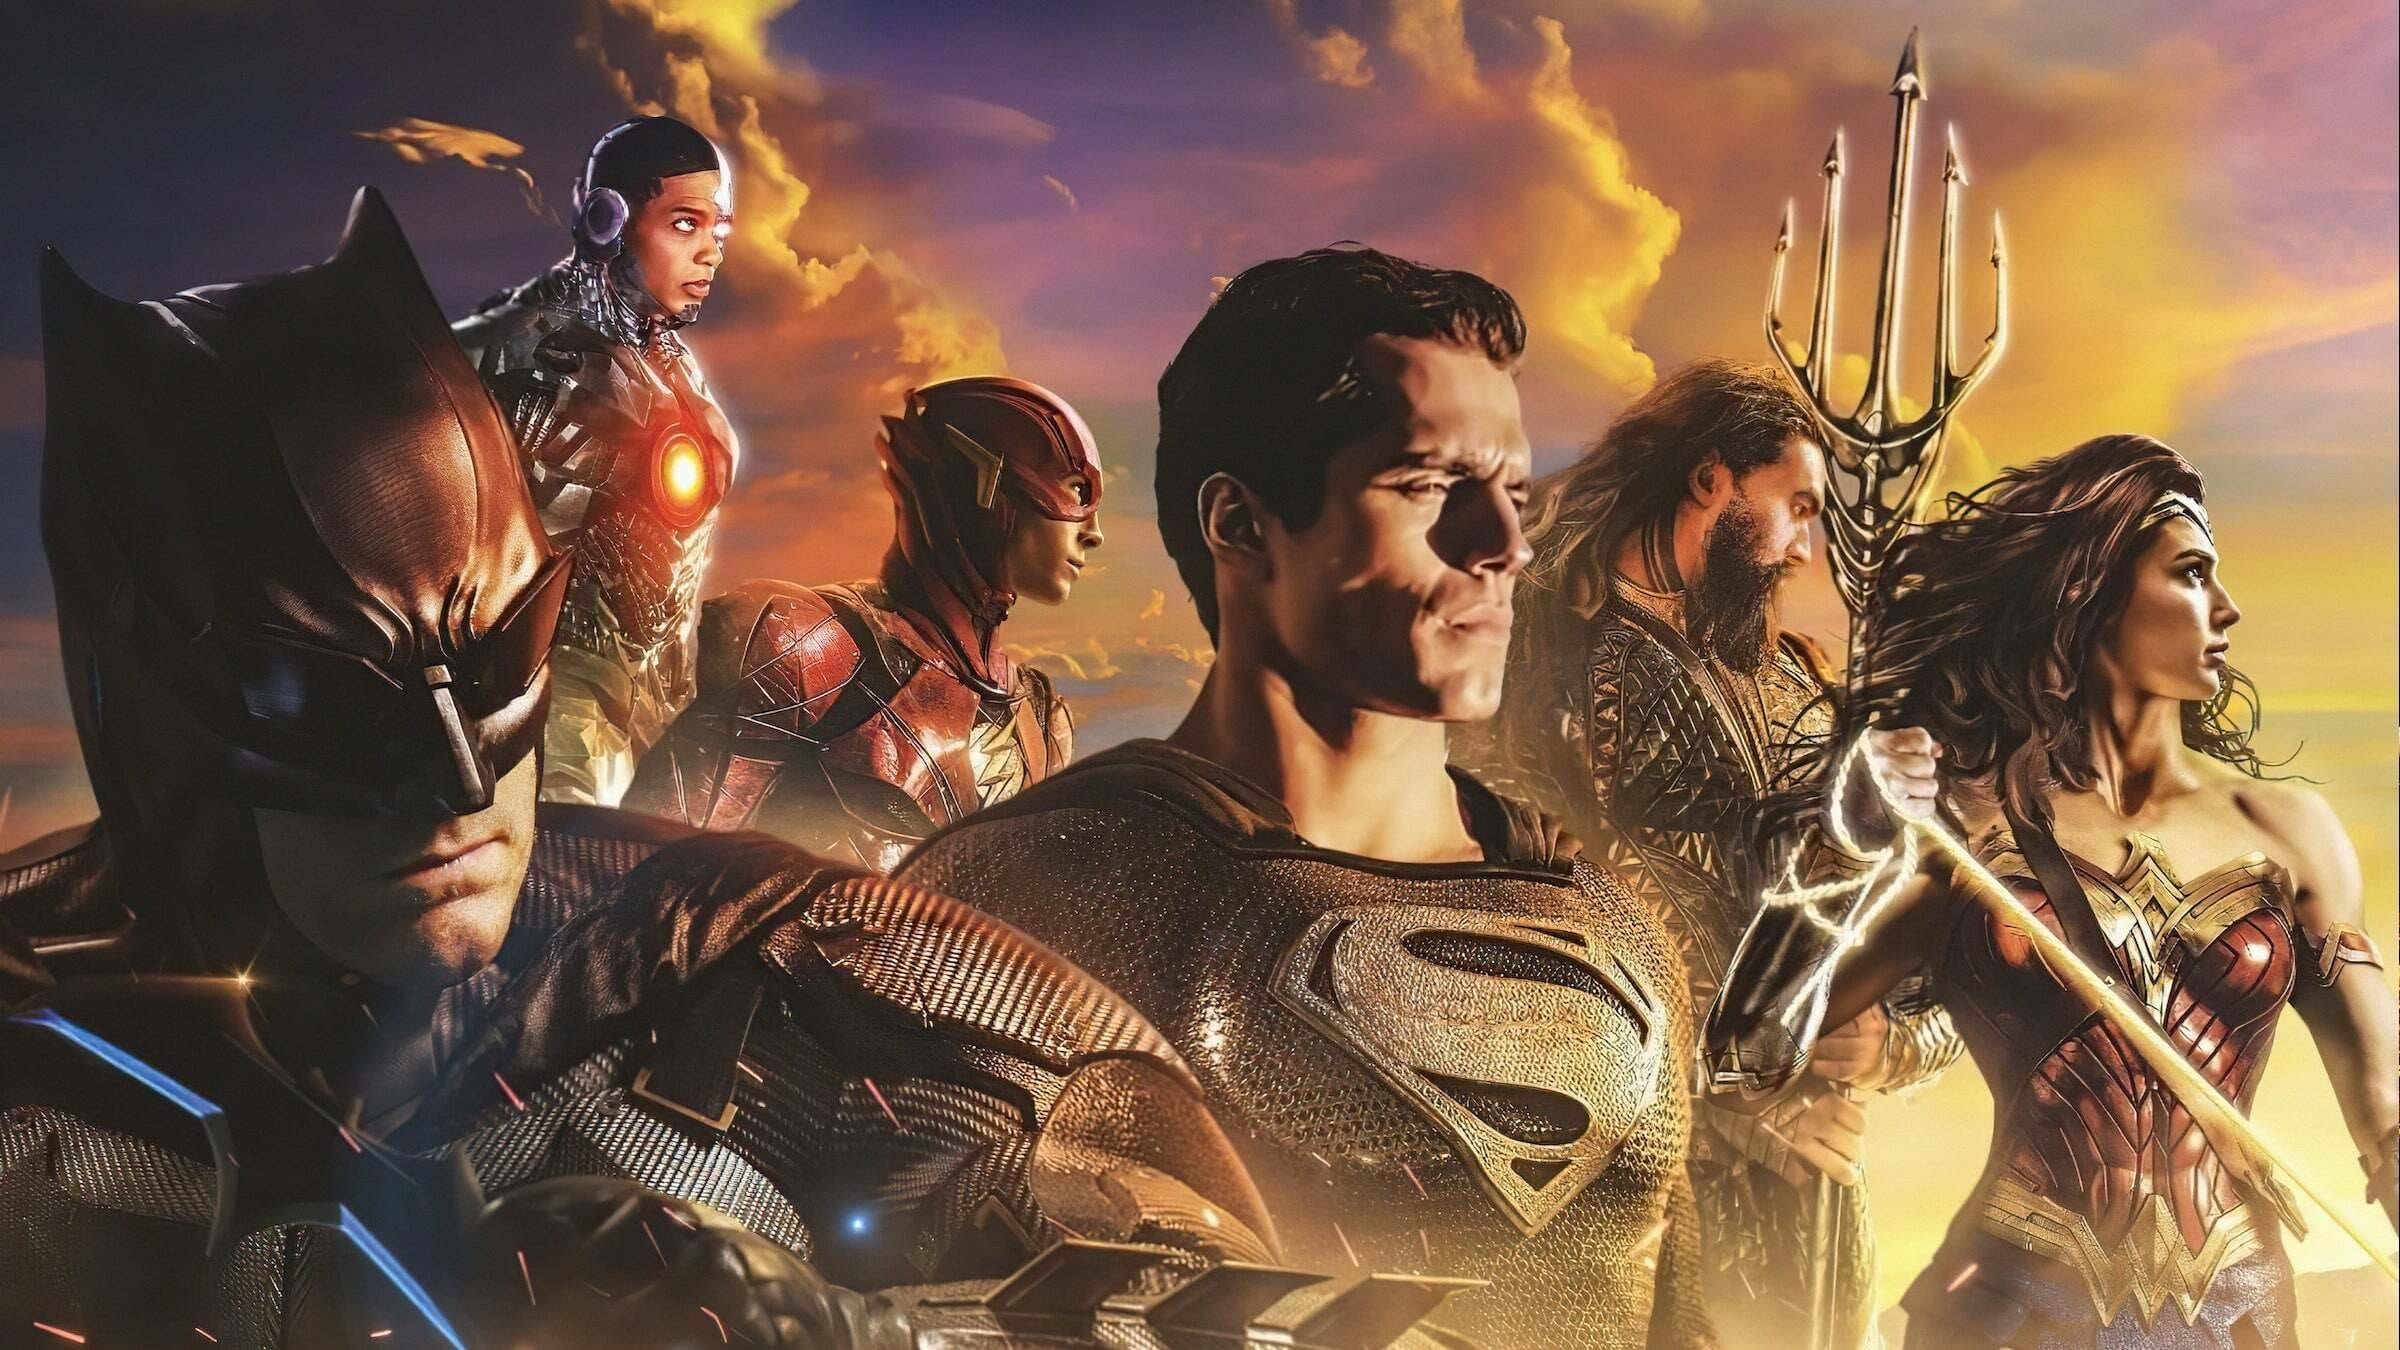 จัสติซ ลีก ของ แซ็ค สไนเดอร์ Zack Snyder's Justice League ออนไลน์โดยสมบูรณ์ในปี 2021